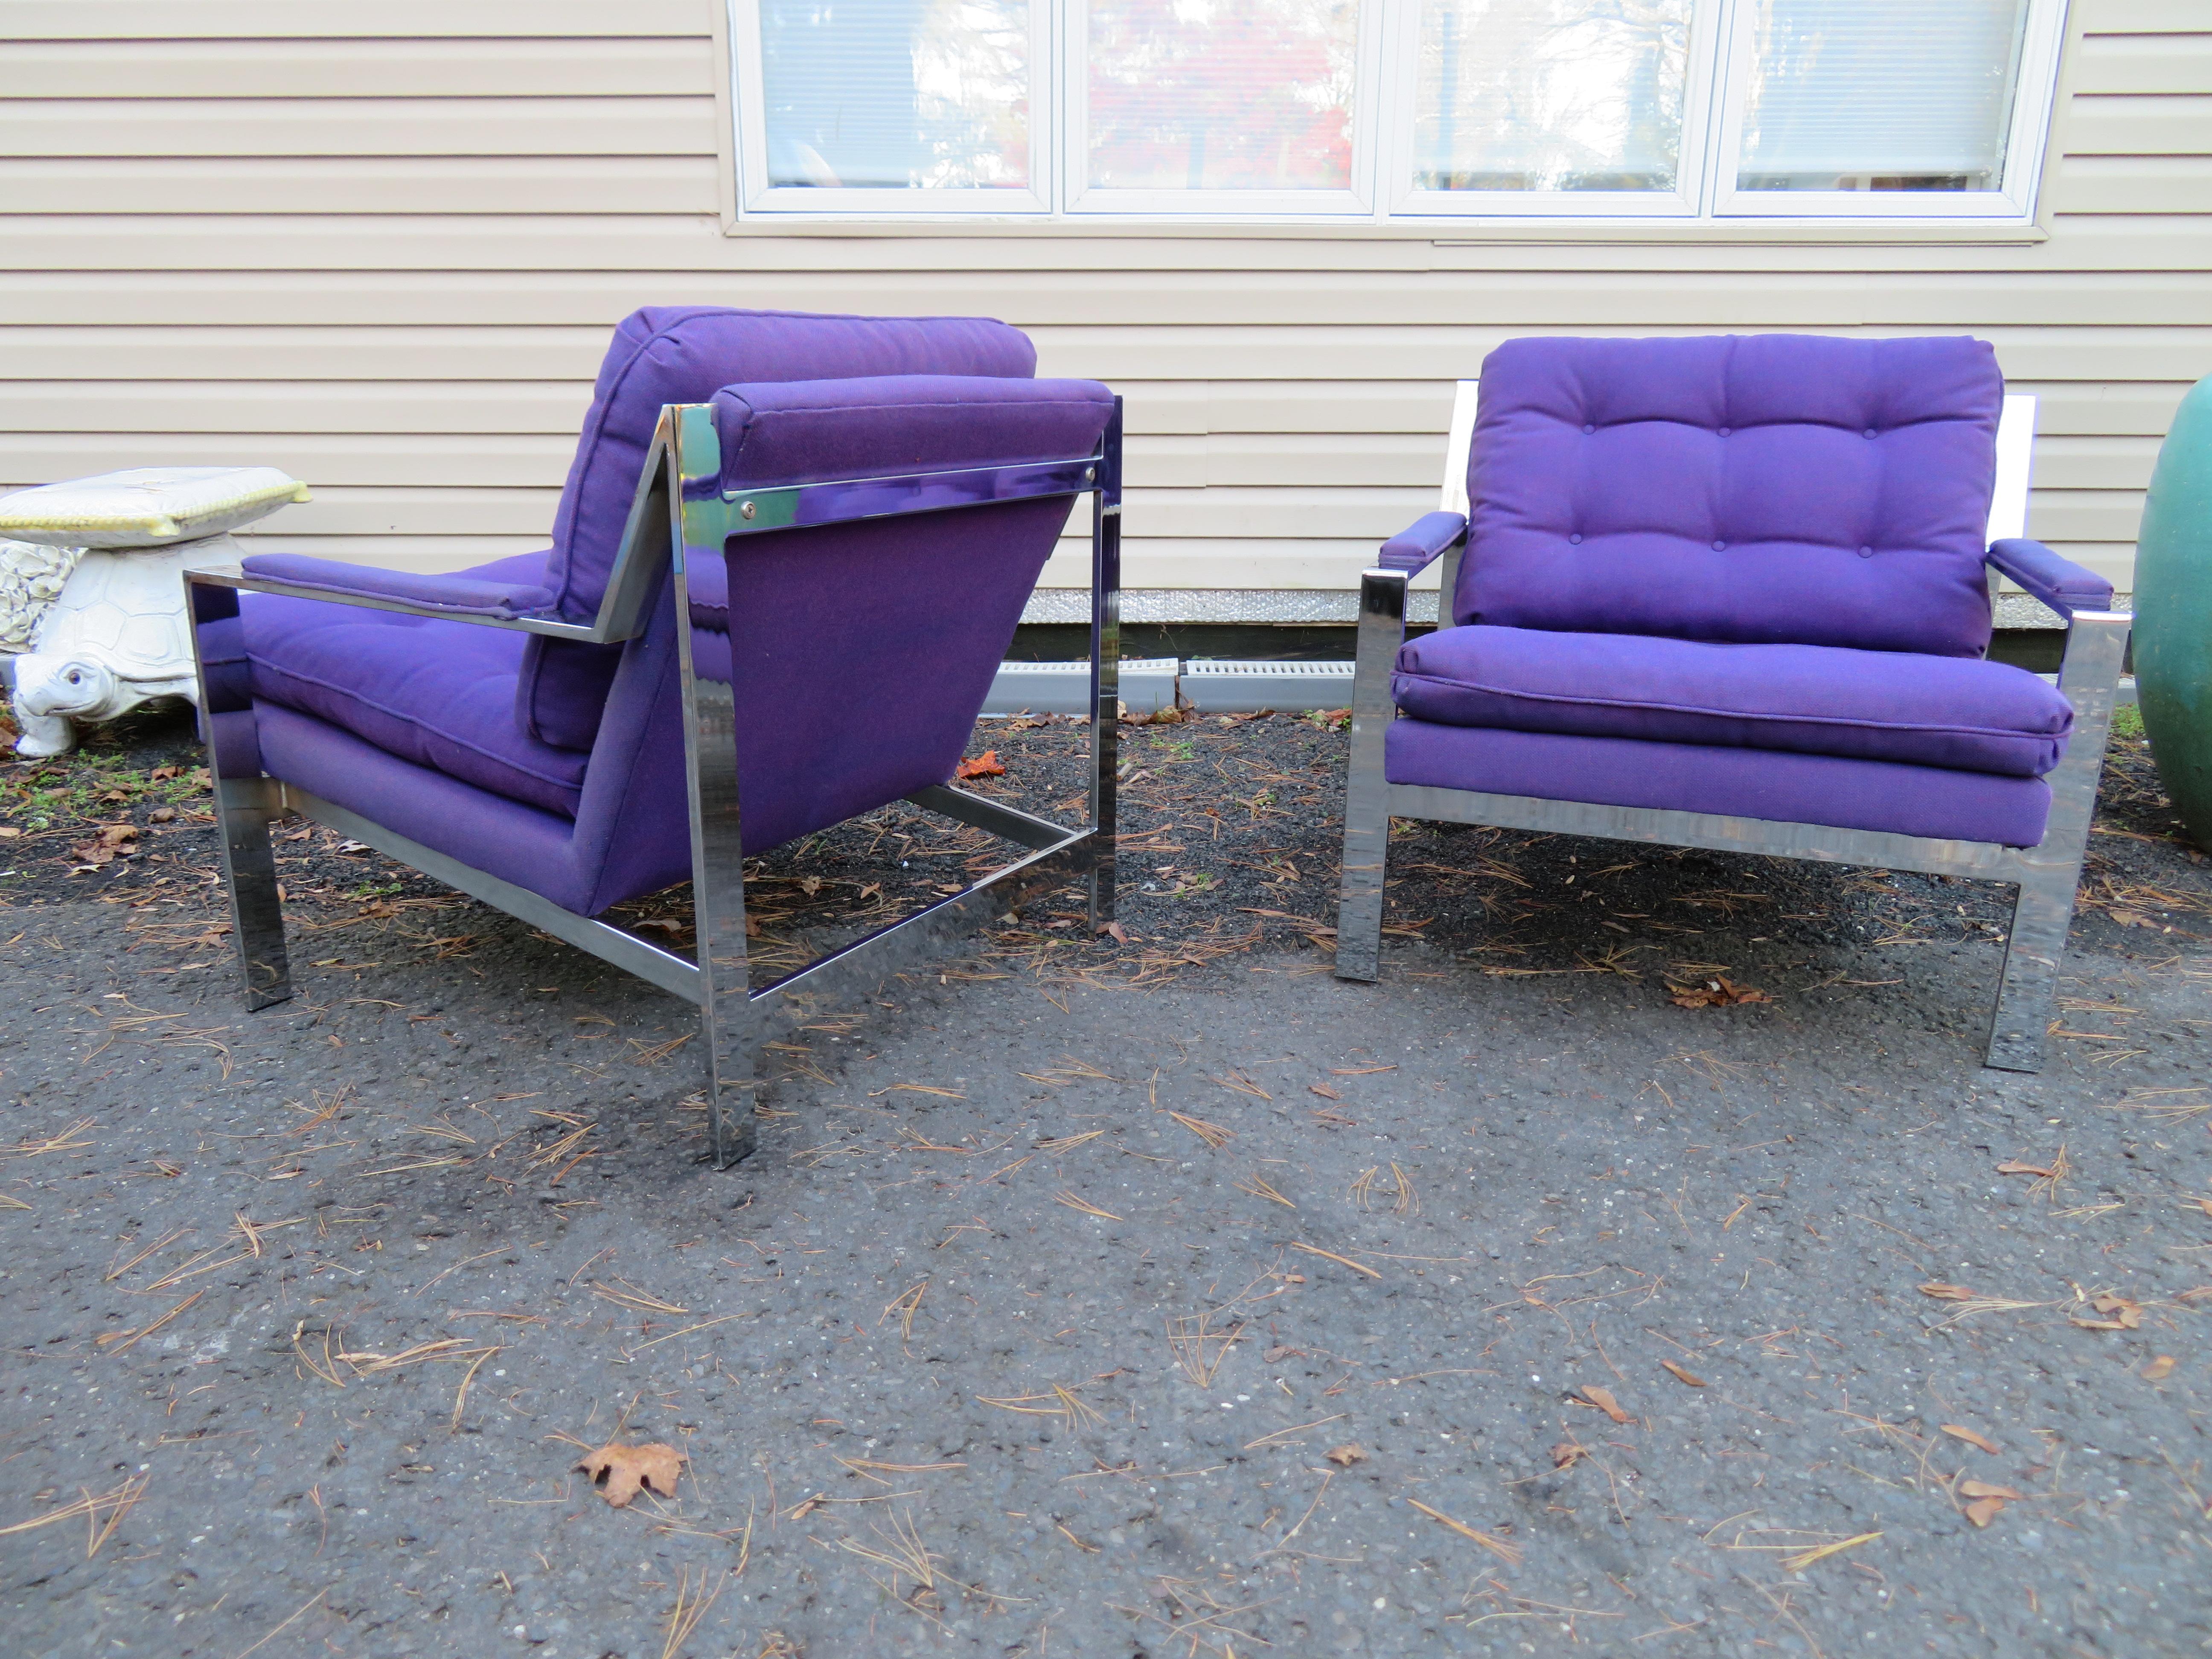 Hübsches Paar verchromter Cy Mann Lounge Cube Chairs. Diese Stühle werden oft fälschlicherweise Milo Baughman zugeschrieben, aber beide sind brillante Designer aus der Mitte des Jahrhunderts! Dieses Paar behält seine ursprüngliche lila gewebten